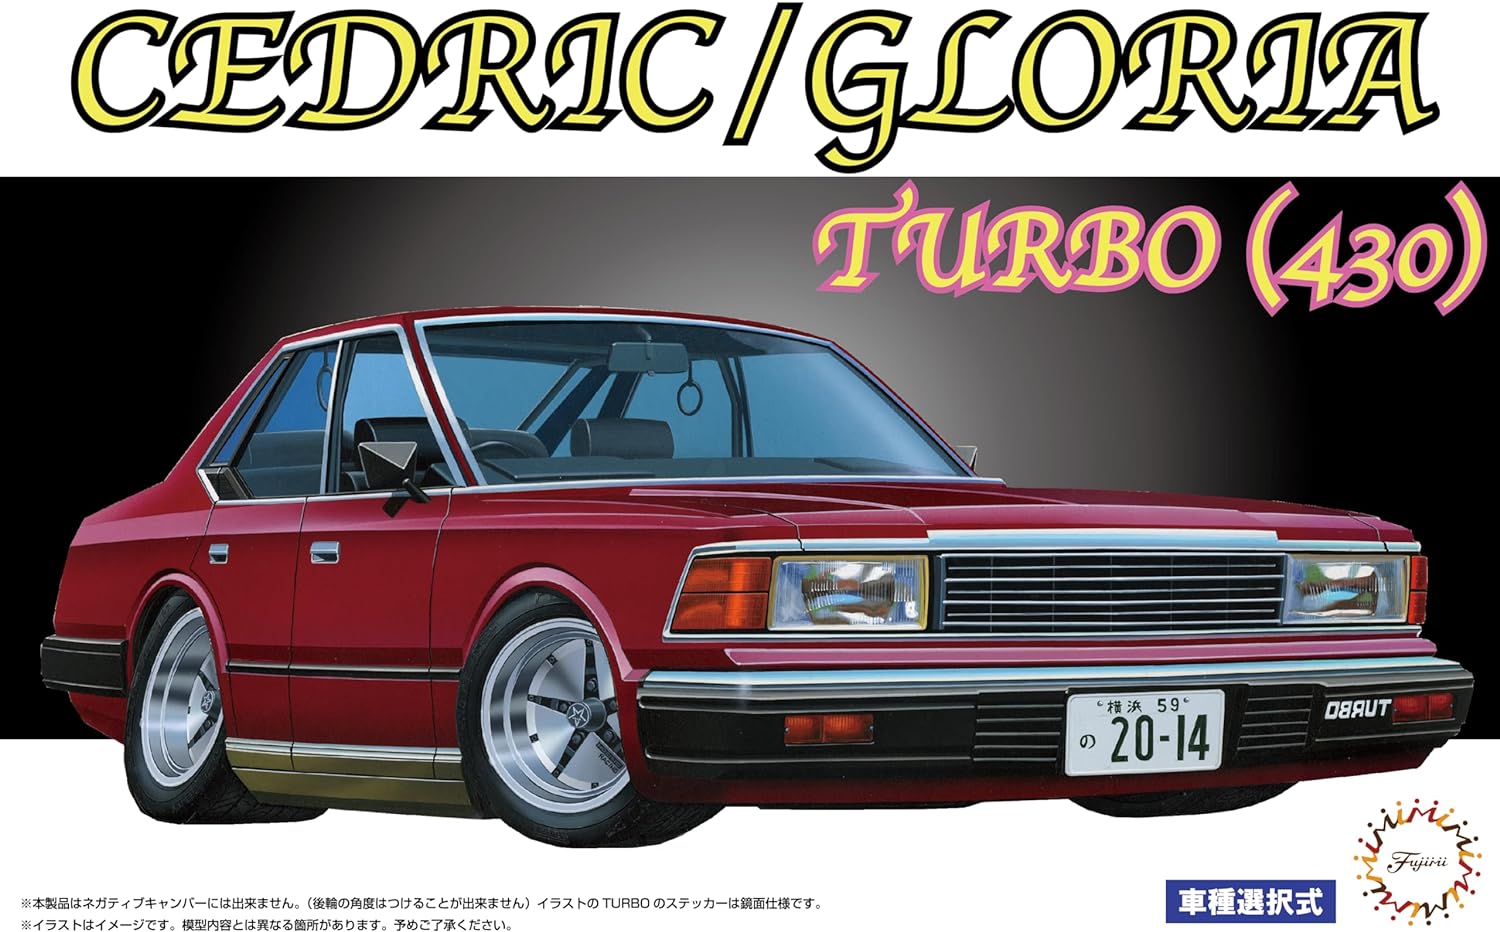 Fujimi Model ID-50 1/24 Inch Up Series No.50 Nissan Cedric/Gloria Turbo (430)